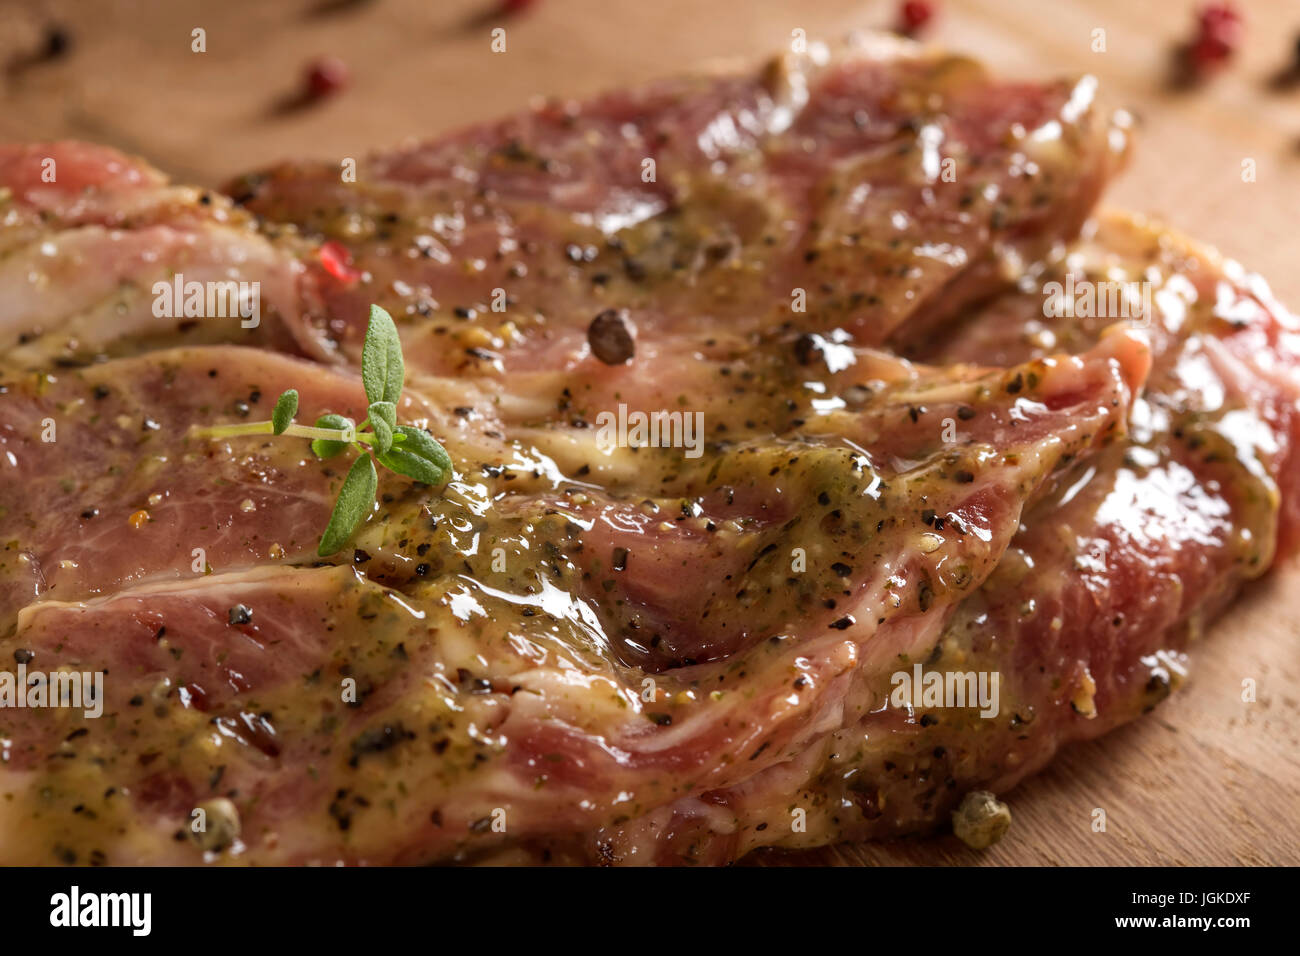 La viande de porc cru mariné prêt à être mis sur le grill avec le poivre et le thym Banque D'Images